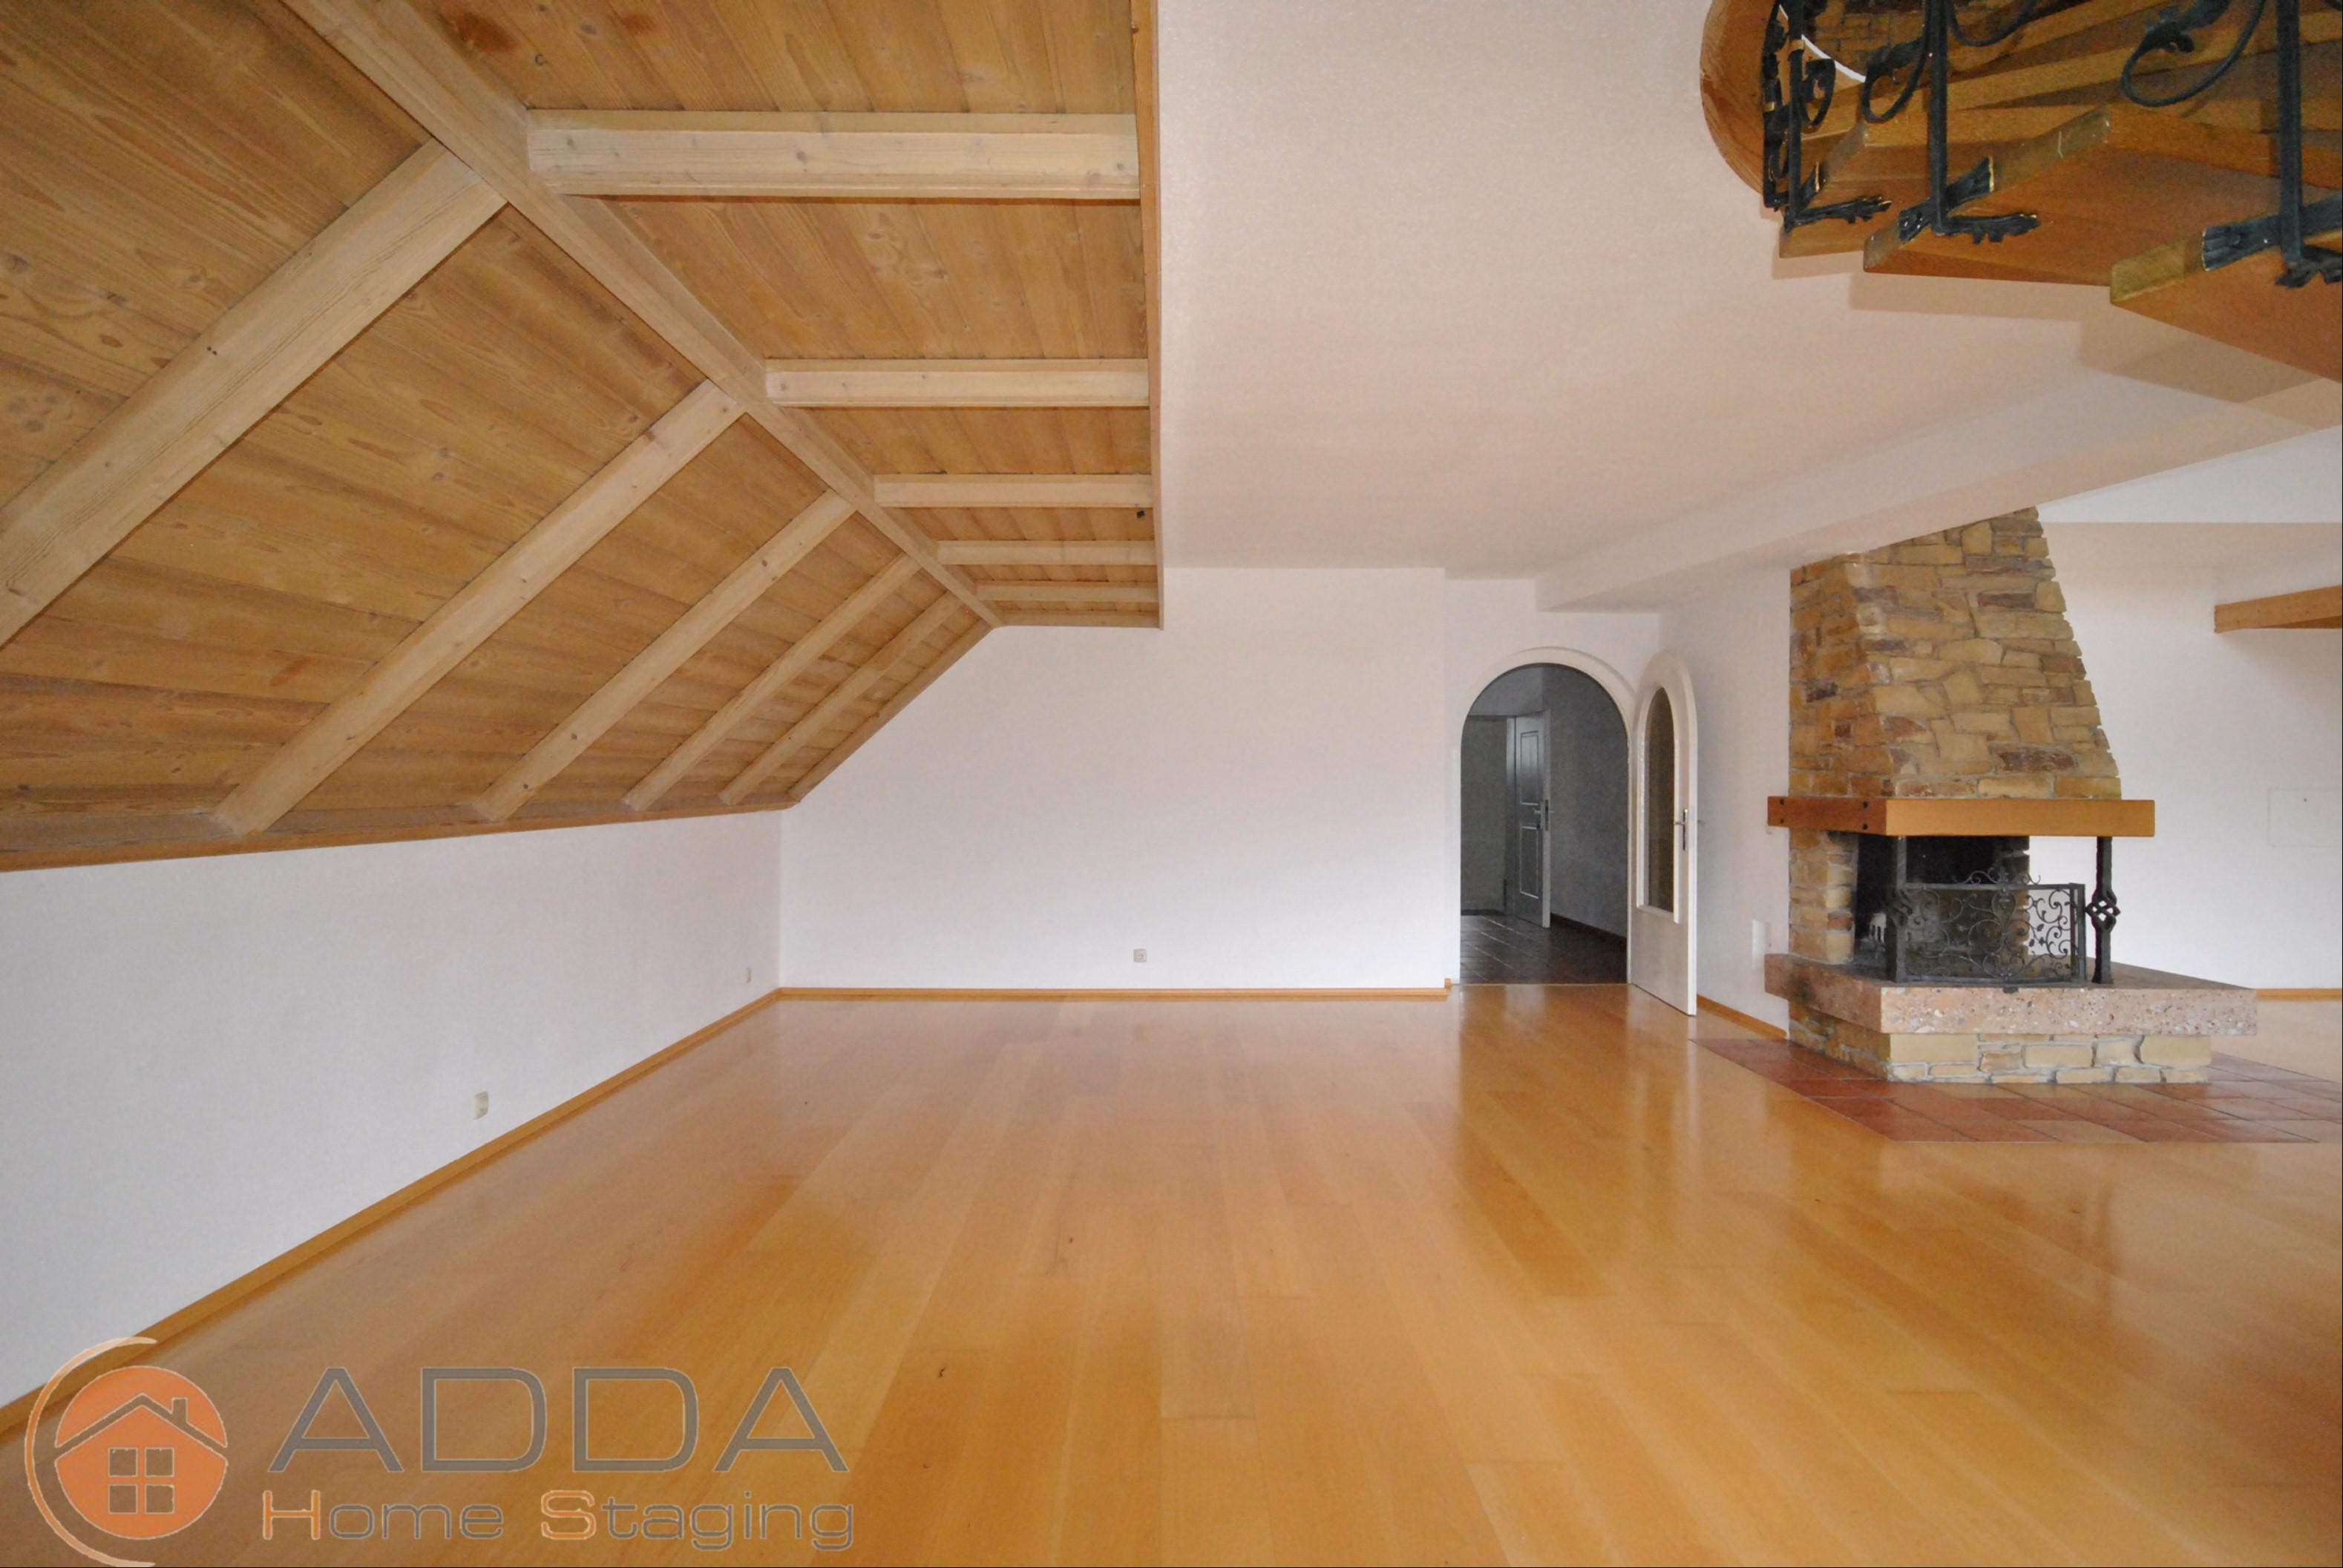 Essbereich vor dem Home Staging #raumgestaltung ©ADDA Home Staging